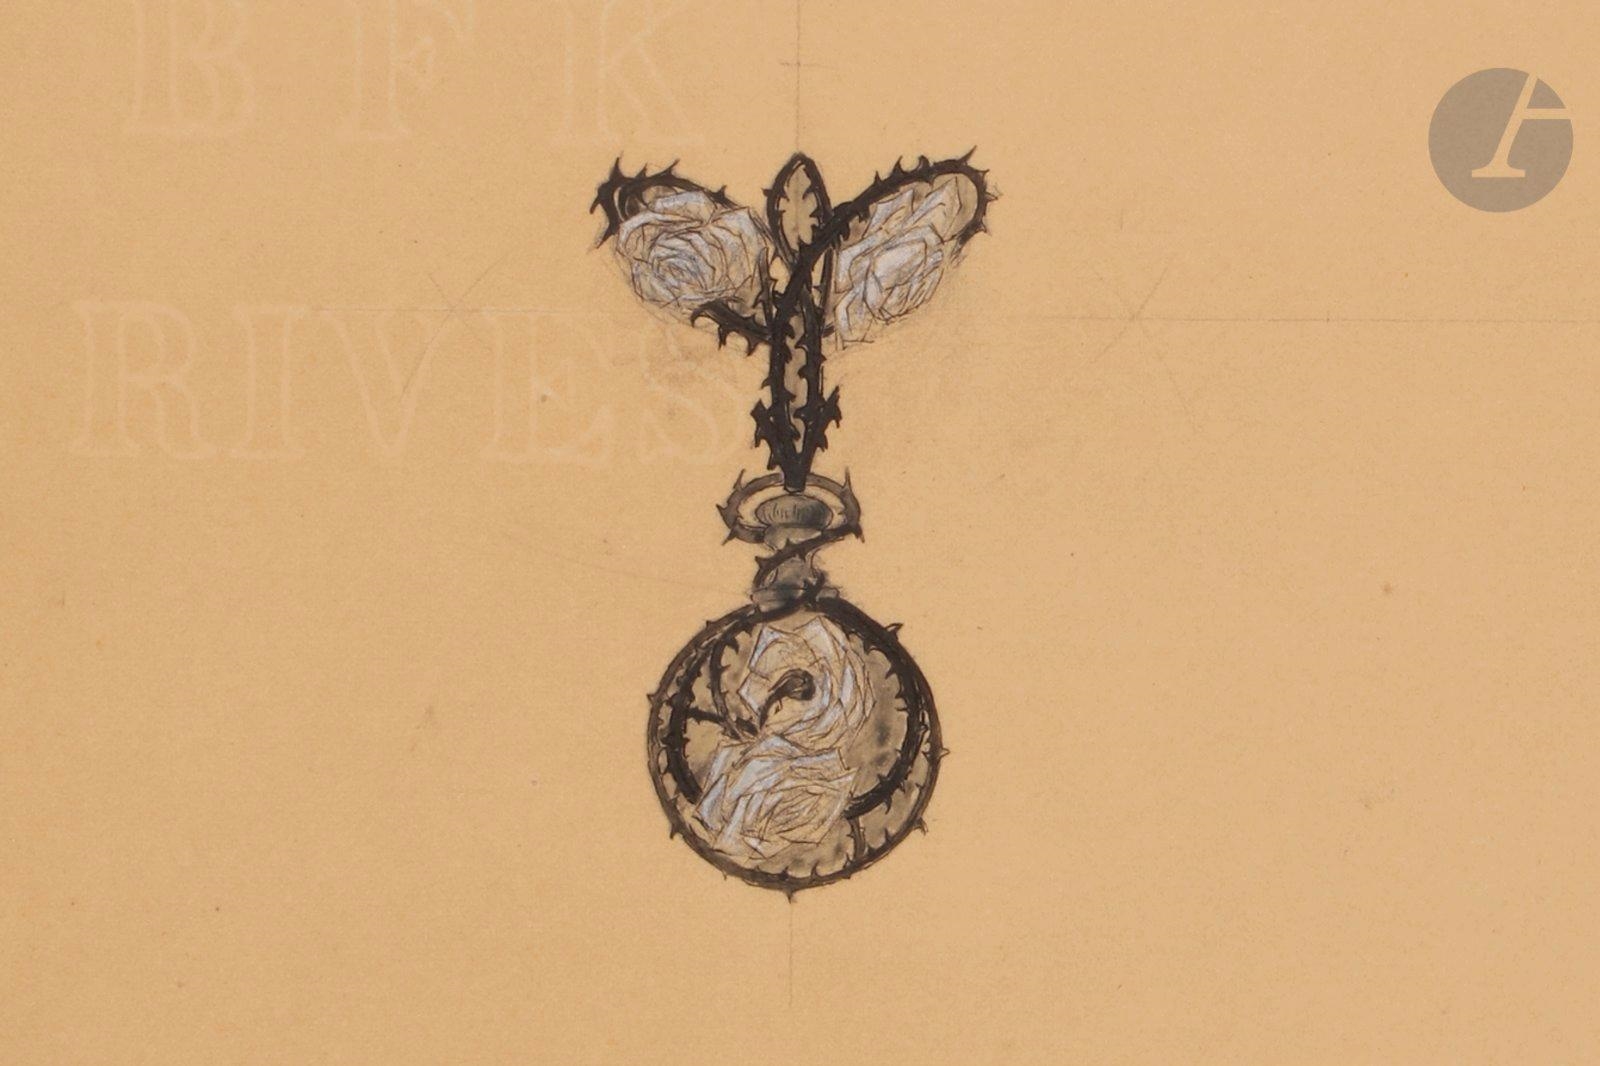 Projet de peigne chauve-souris by René Lalique on artnet